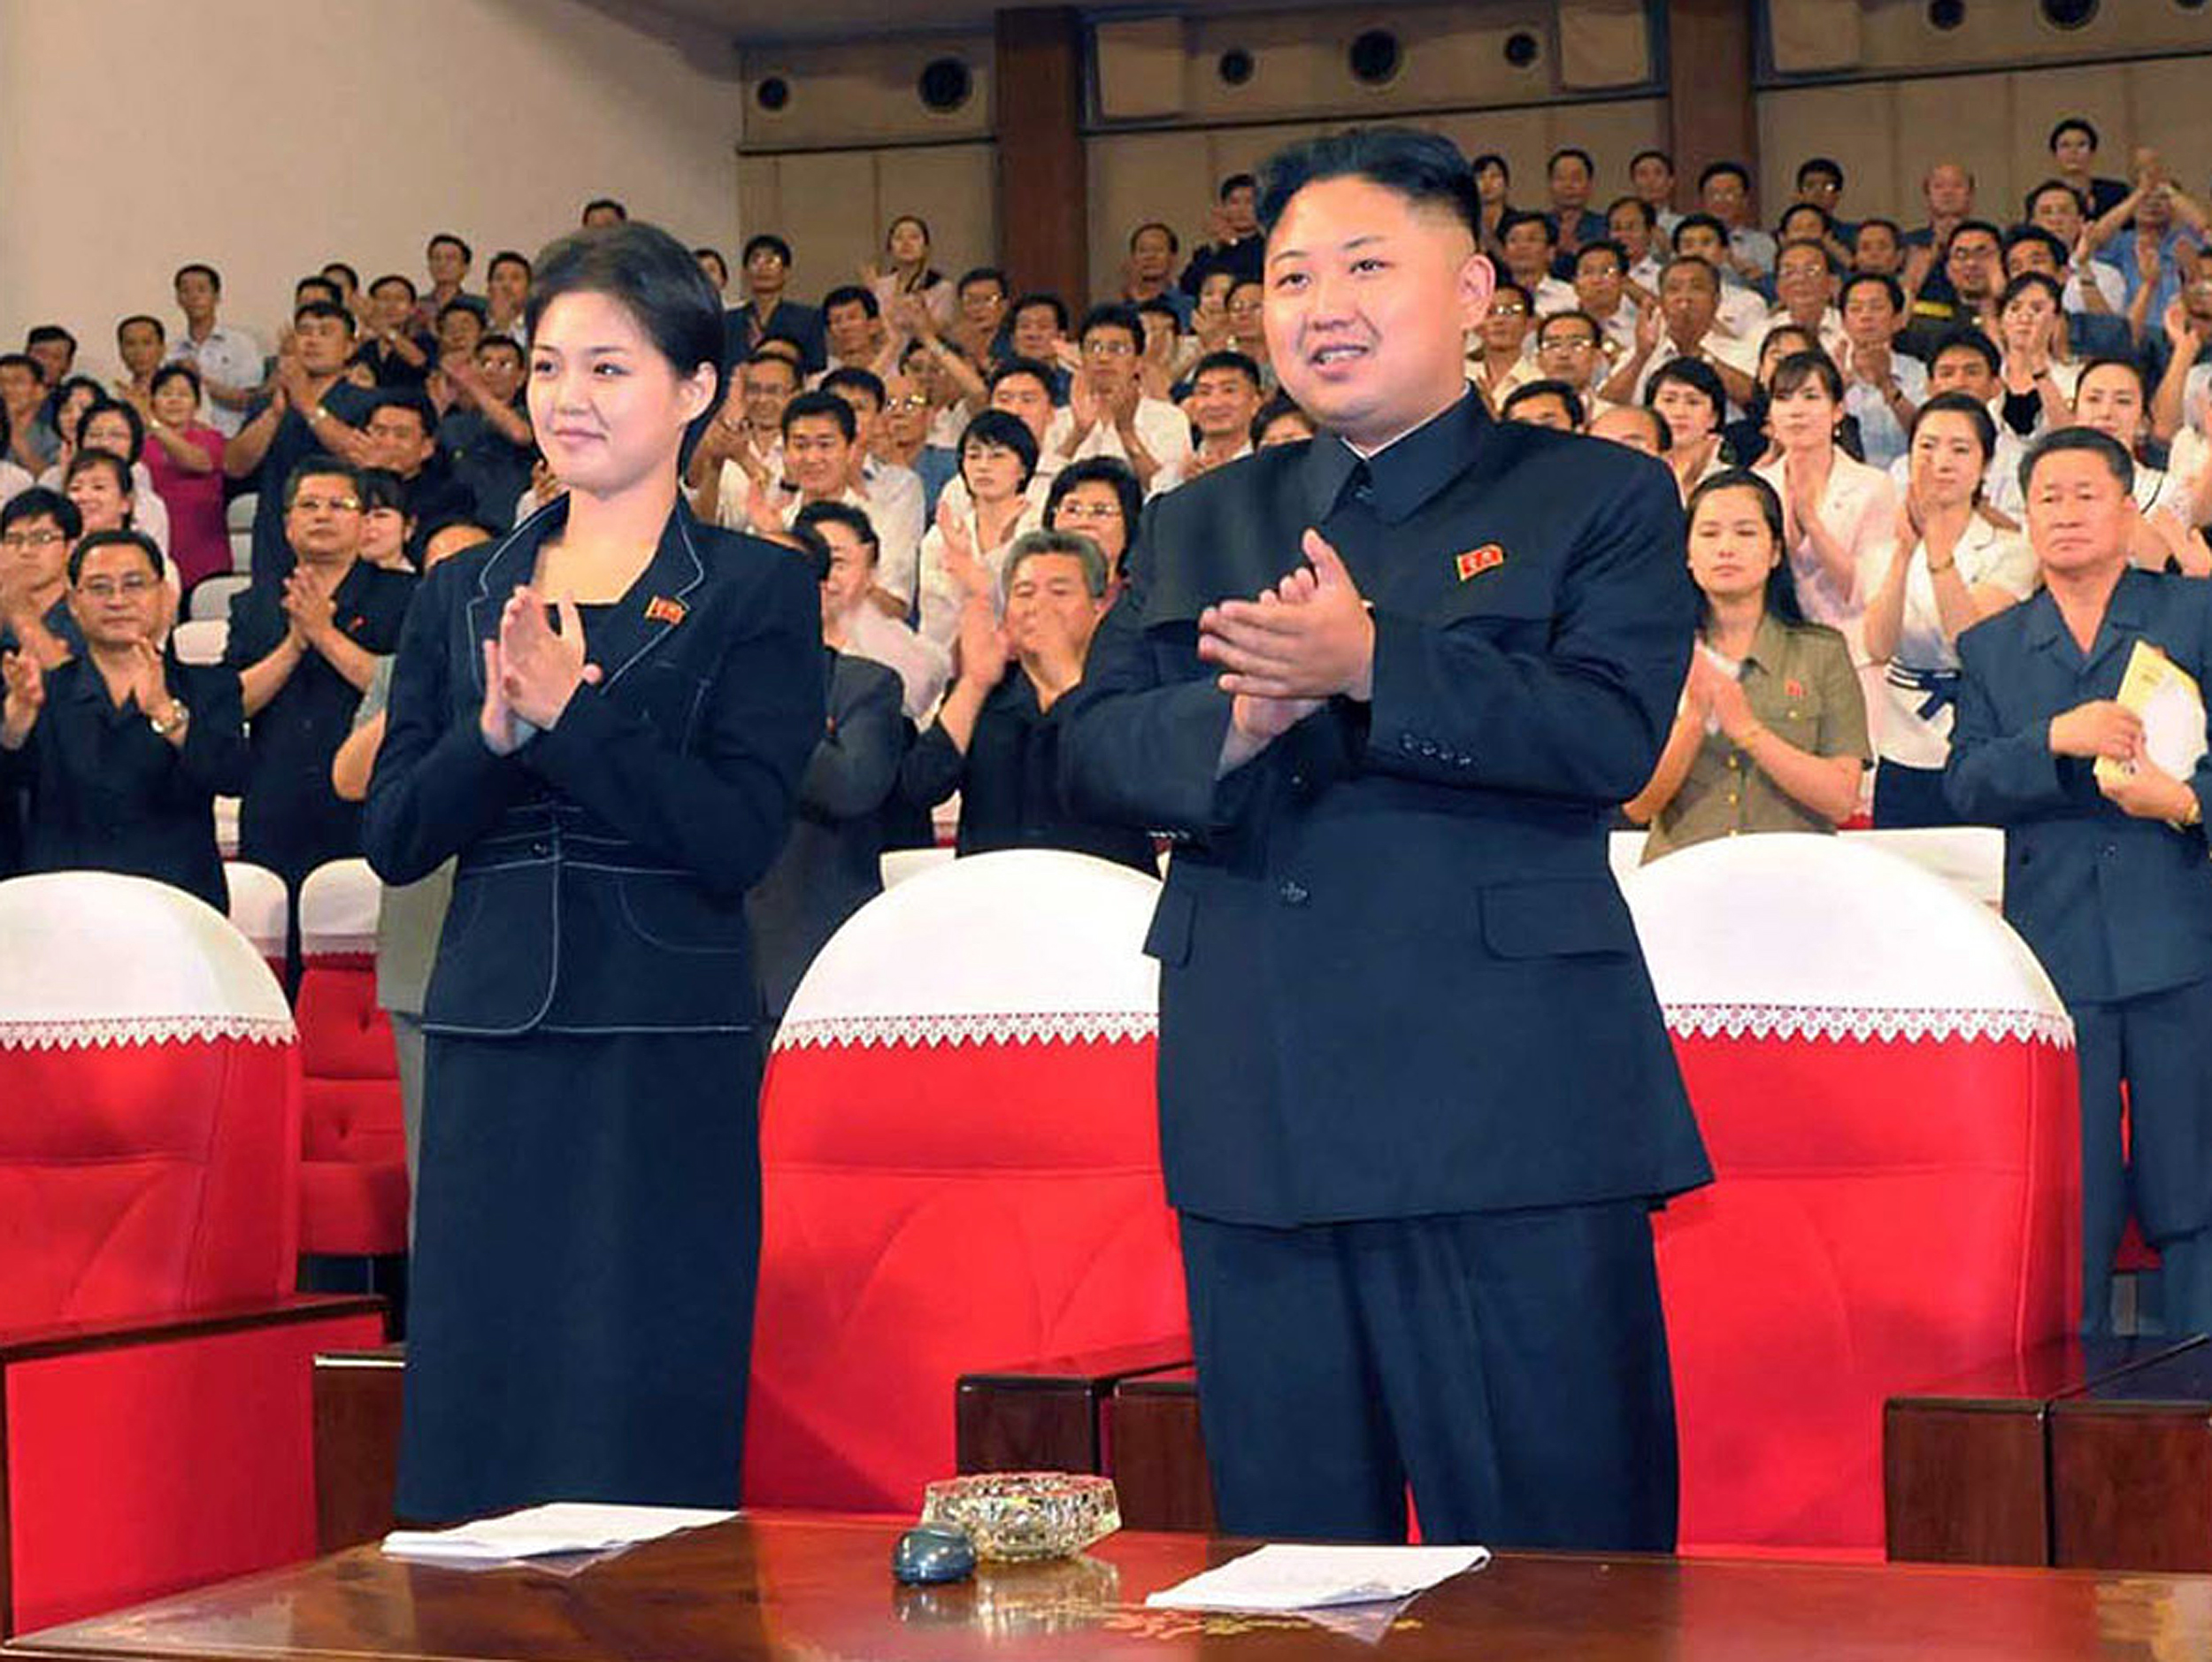 лидер северной кореи с женой